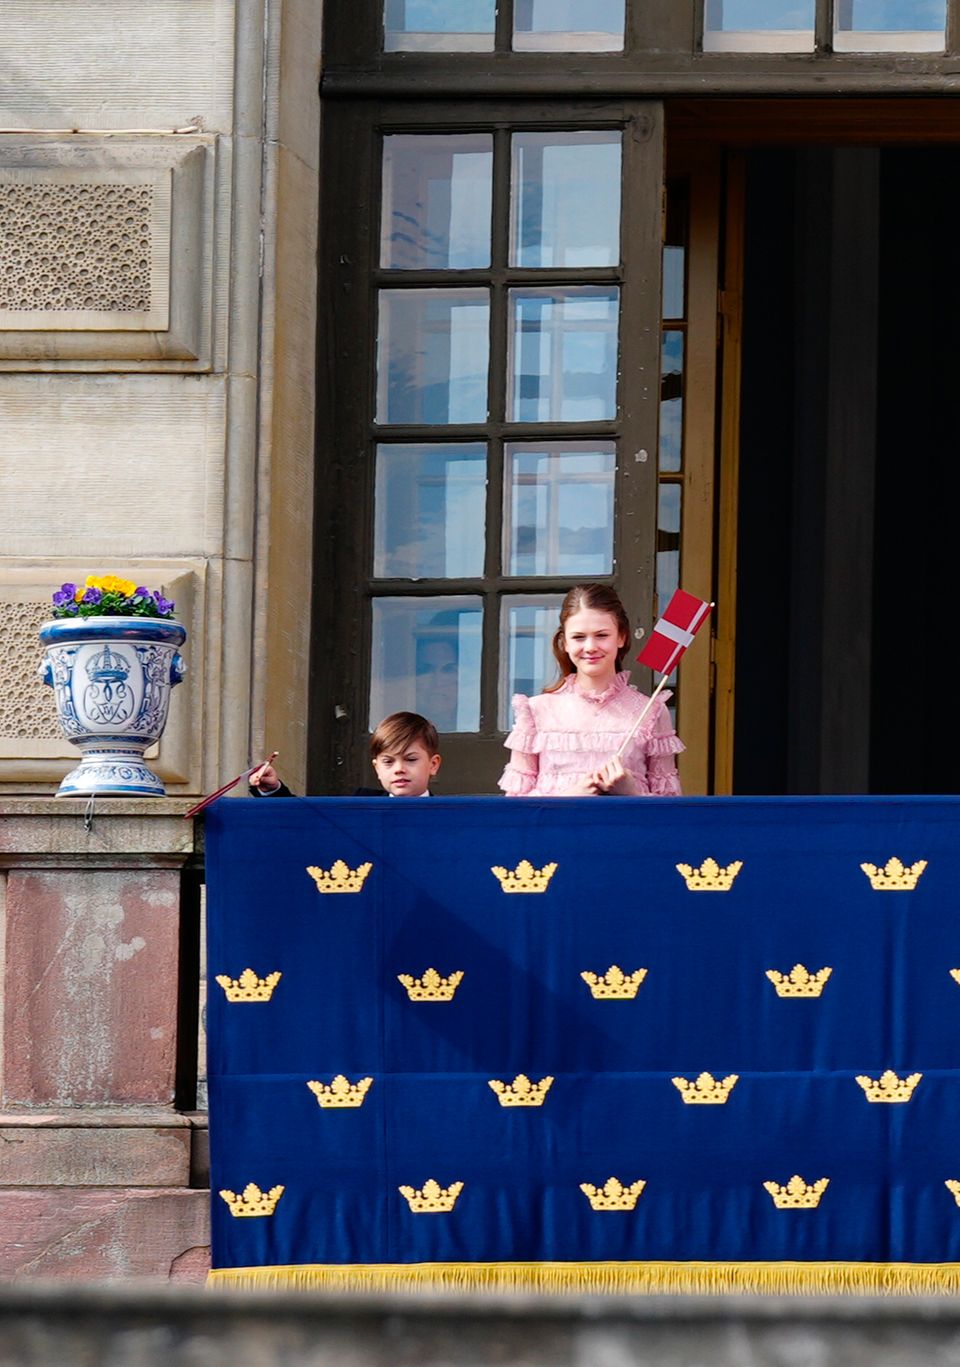 Suddenly Prince Oscar and Princess Estelle appear.